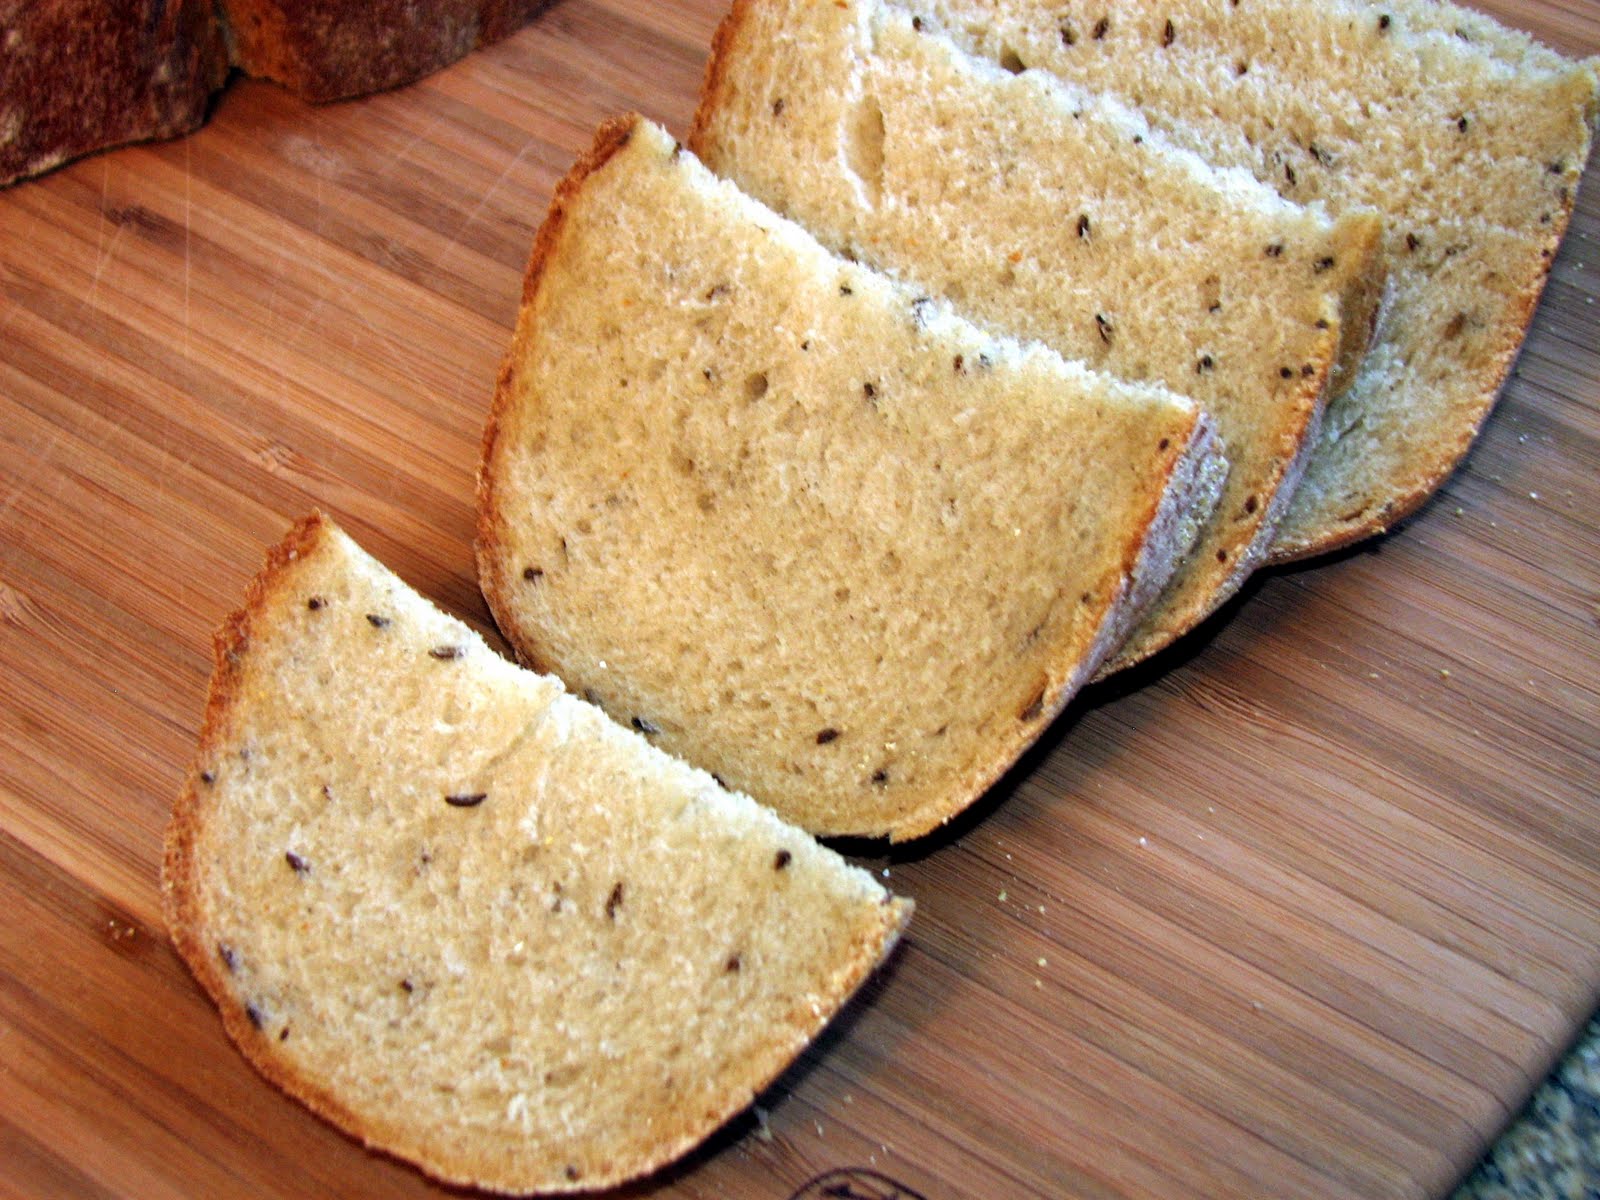 breadbasketcase: 'Levy's' Real Jewish Rye Bread